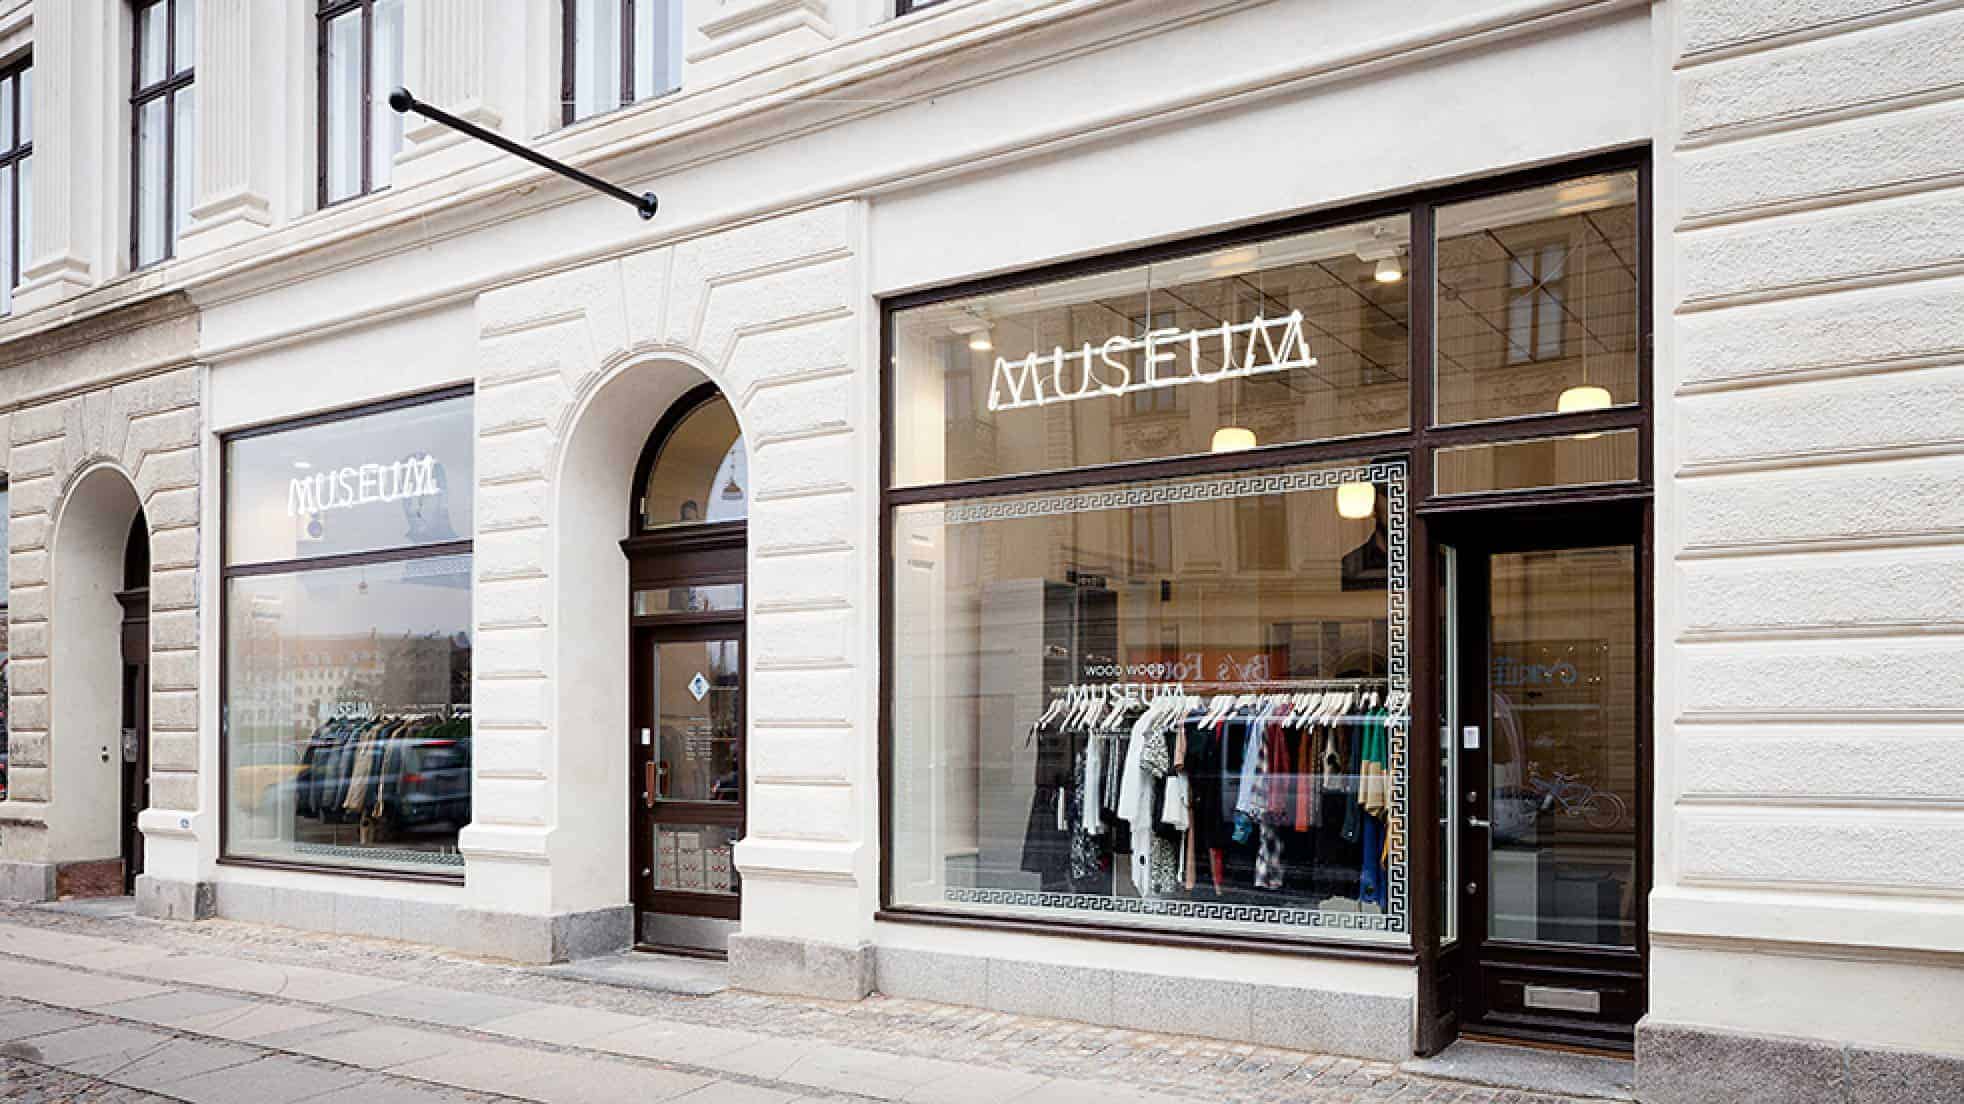 W.W. MUSEUM, Copenhagen, Denmark | Find Fashion Stores Worldwide Hejlist